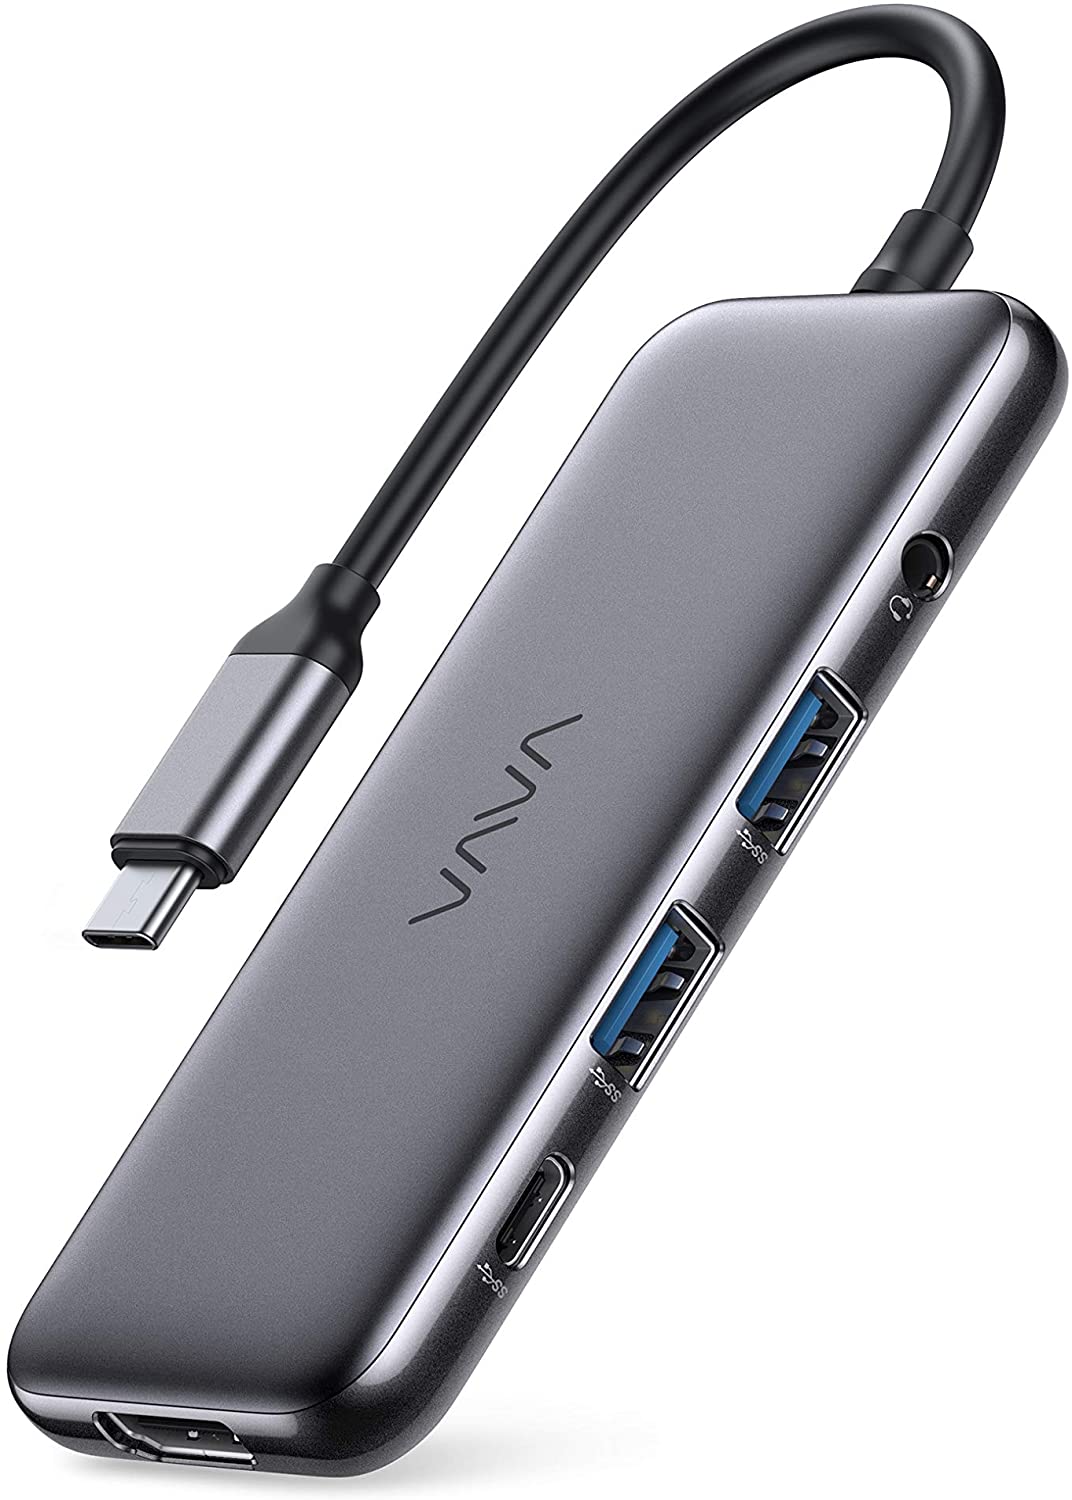 8-in-1 USB-Cハブ「VA-UC020」がSUNVALLEY JAPANより発売中